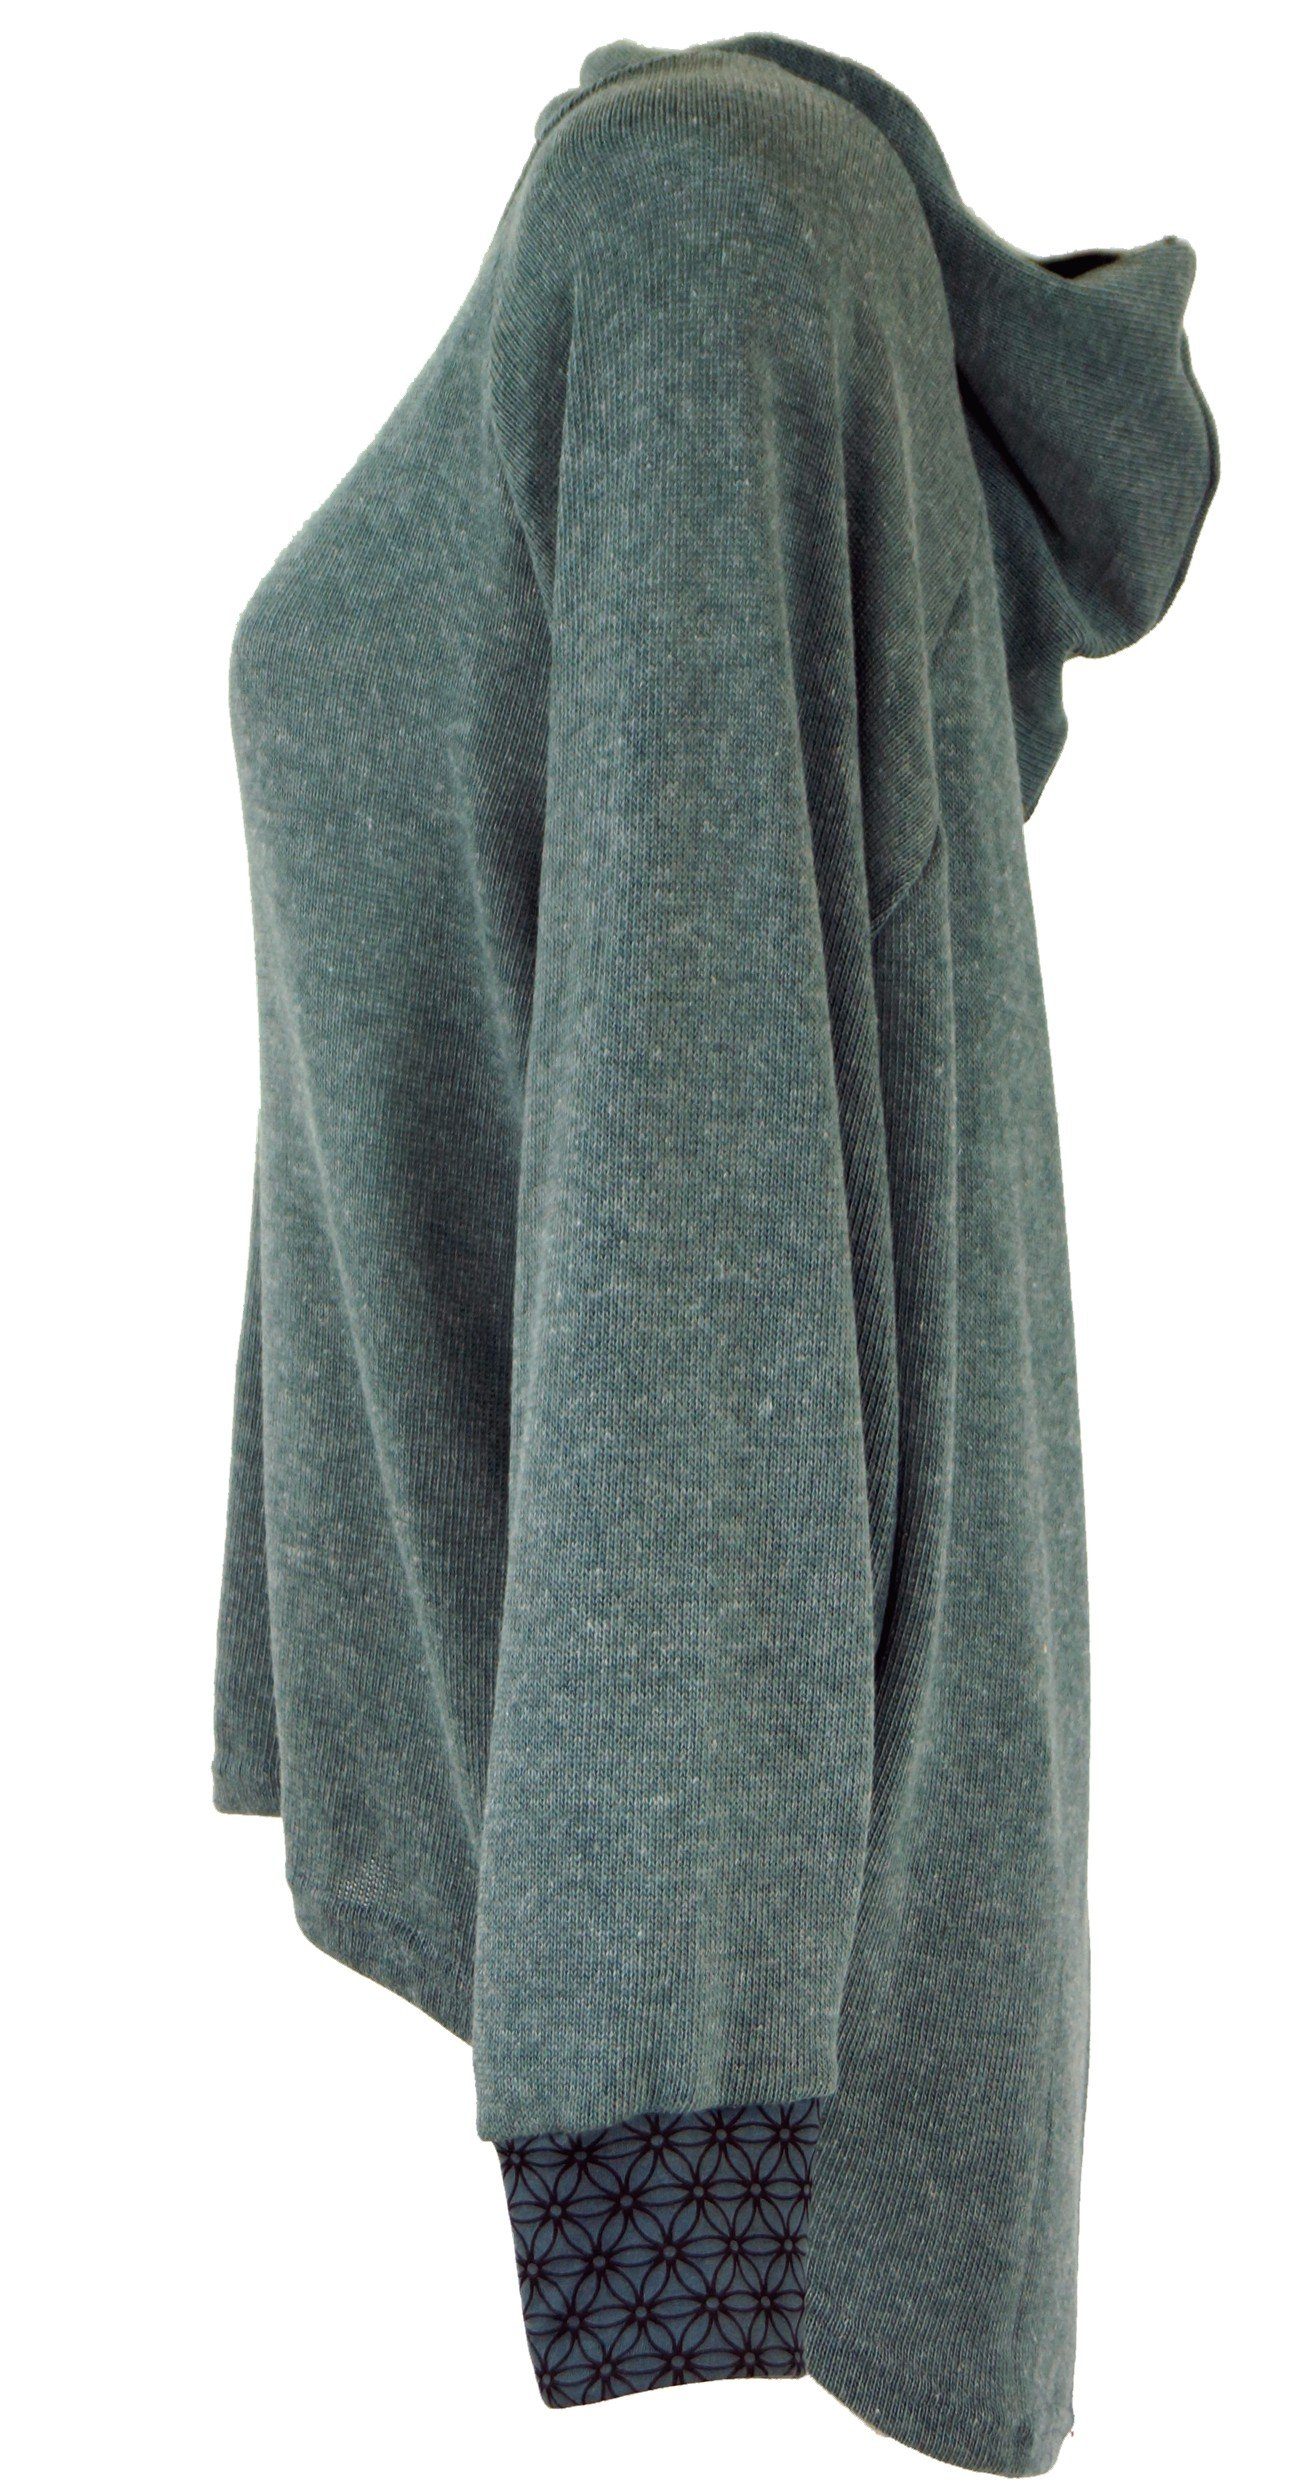 Guru-Shop Longsleeve Hoody, Sweatshirt, Pullover, Kapuzenpullover Bekleidung alternative -.. taubenblau